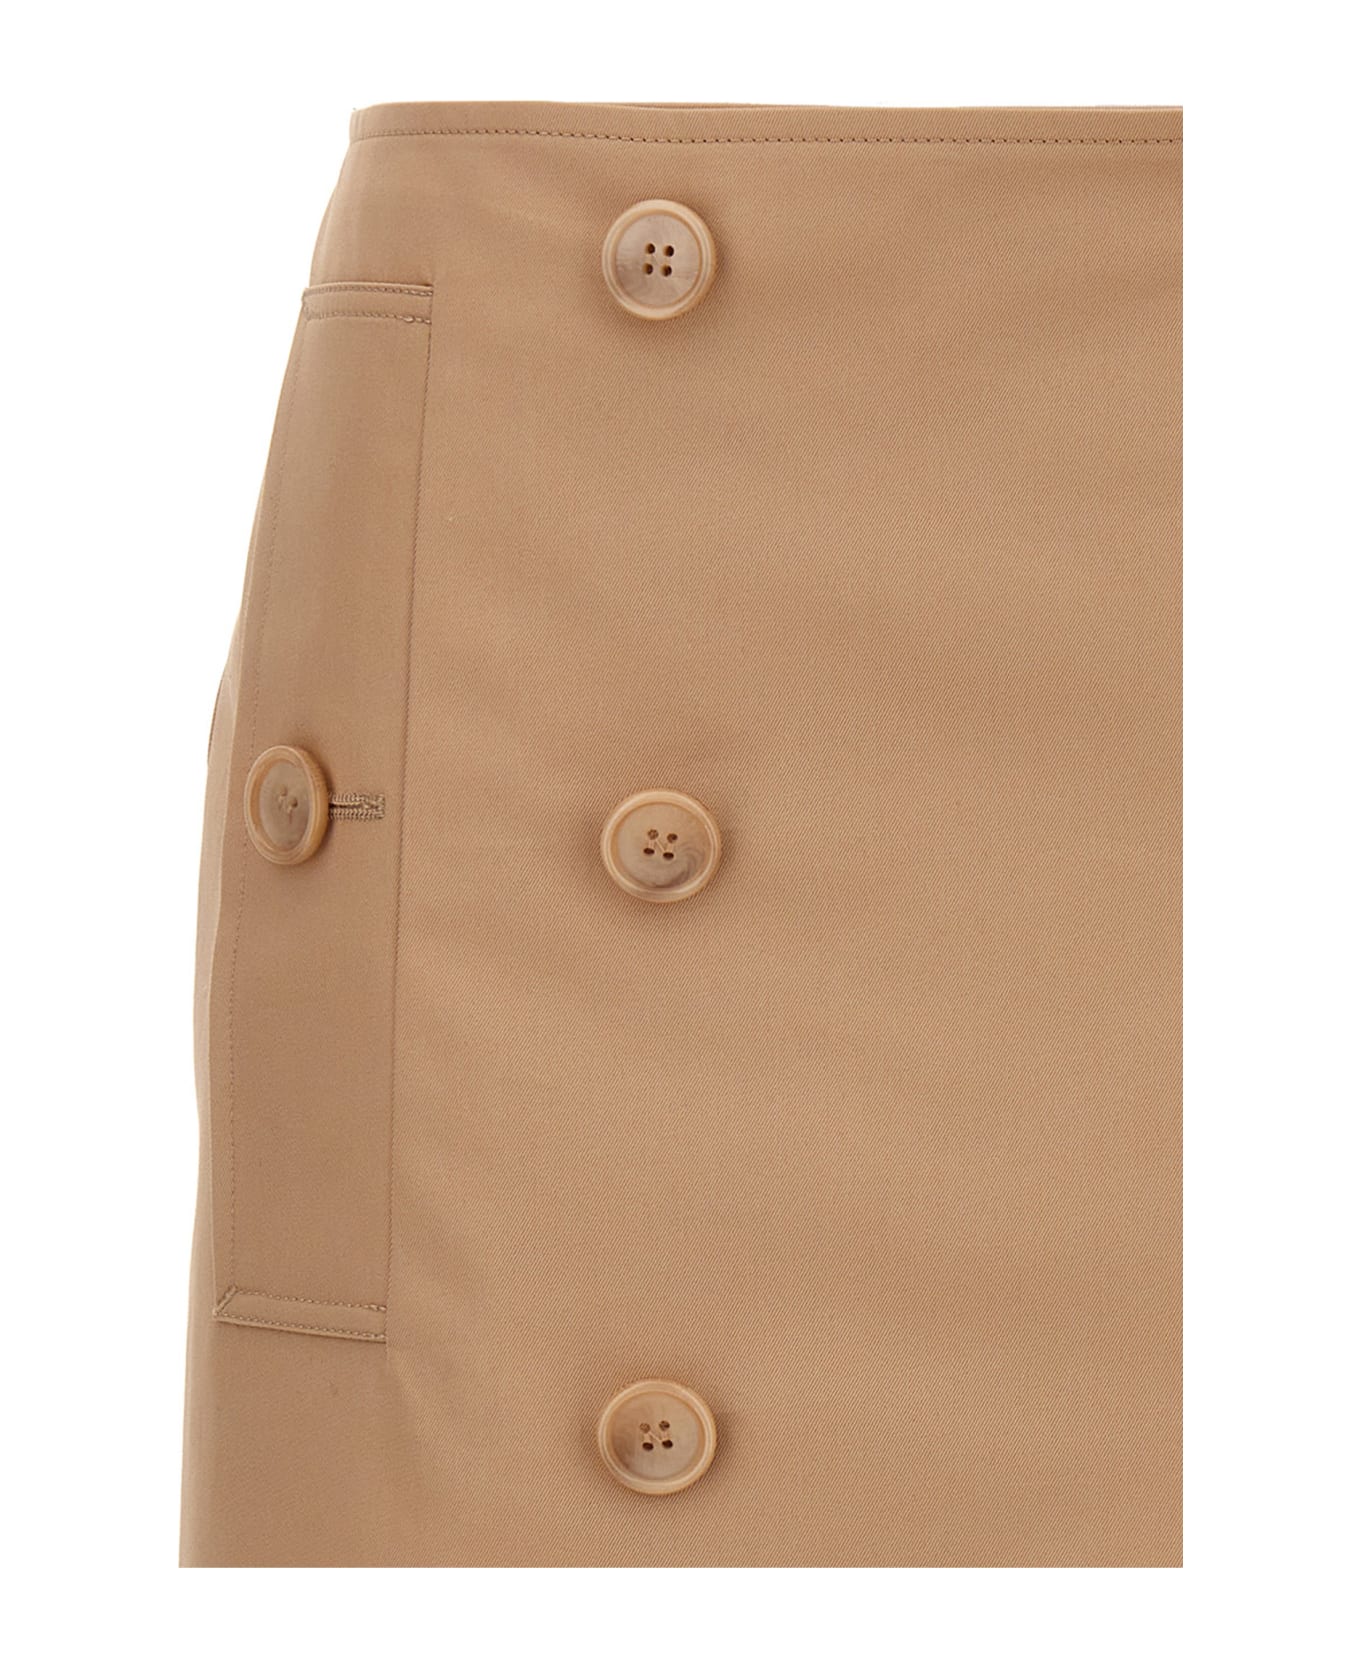 Burberry Button Cotton Skirt - Beige